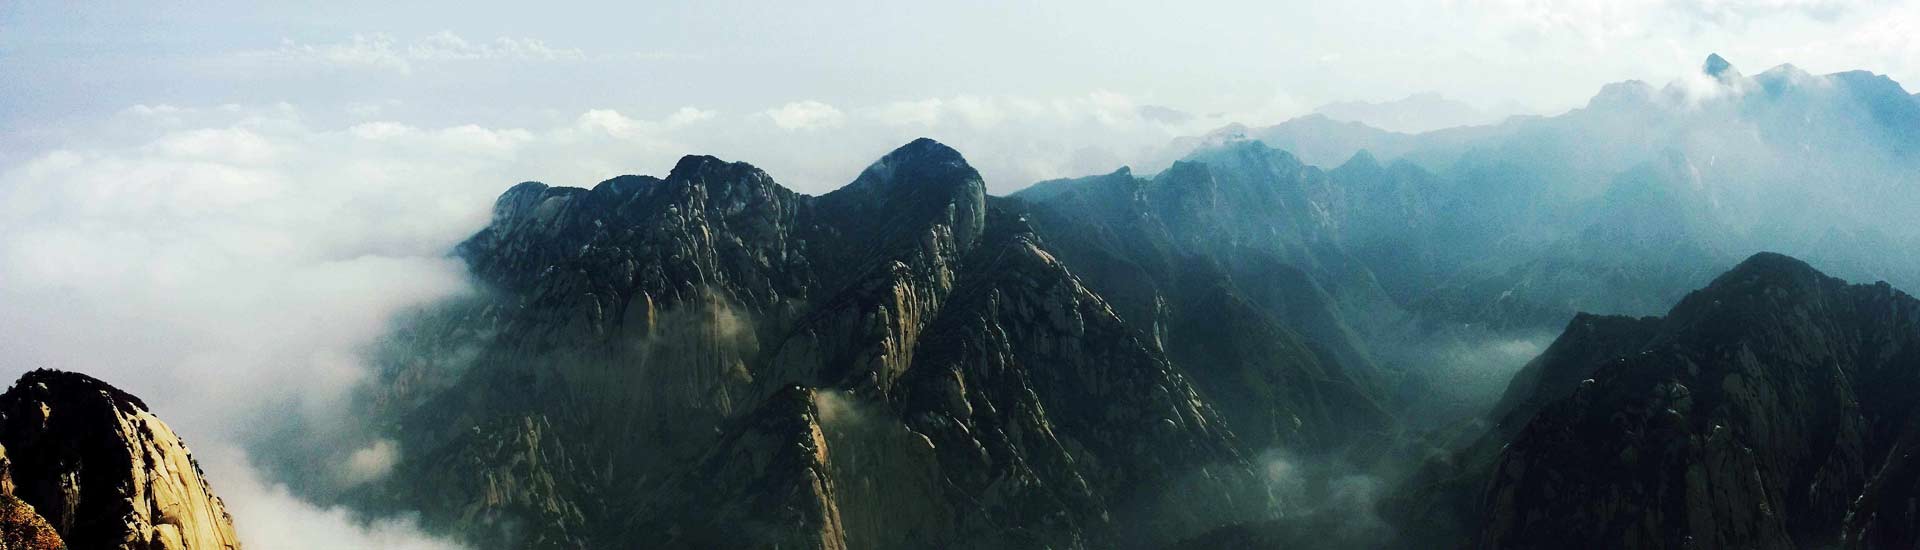 1 Day Tour: Xian Huashan Mountain